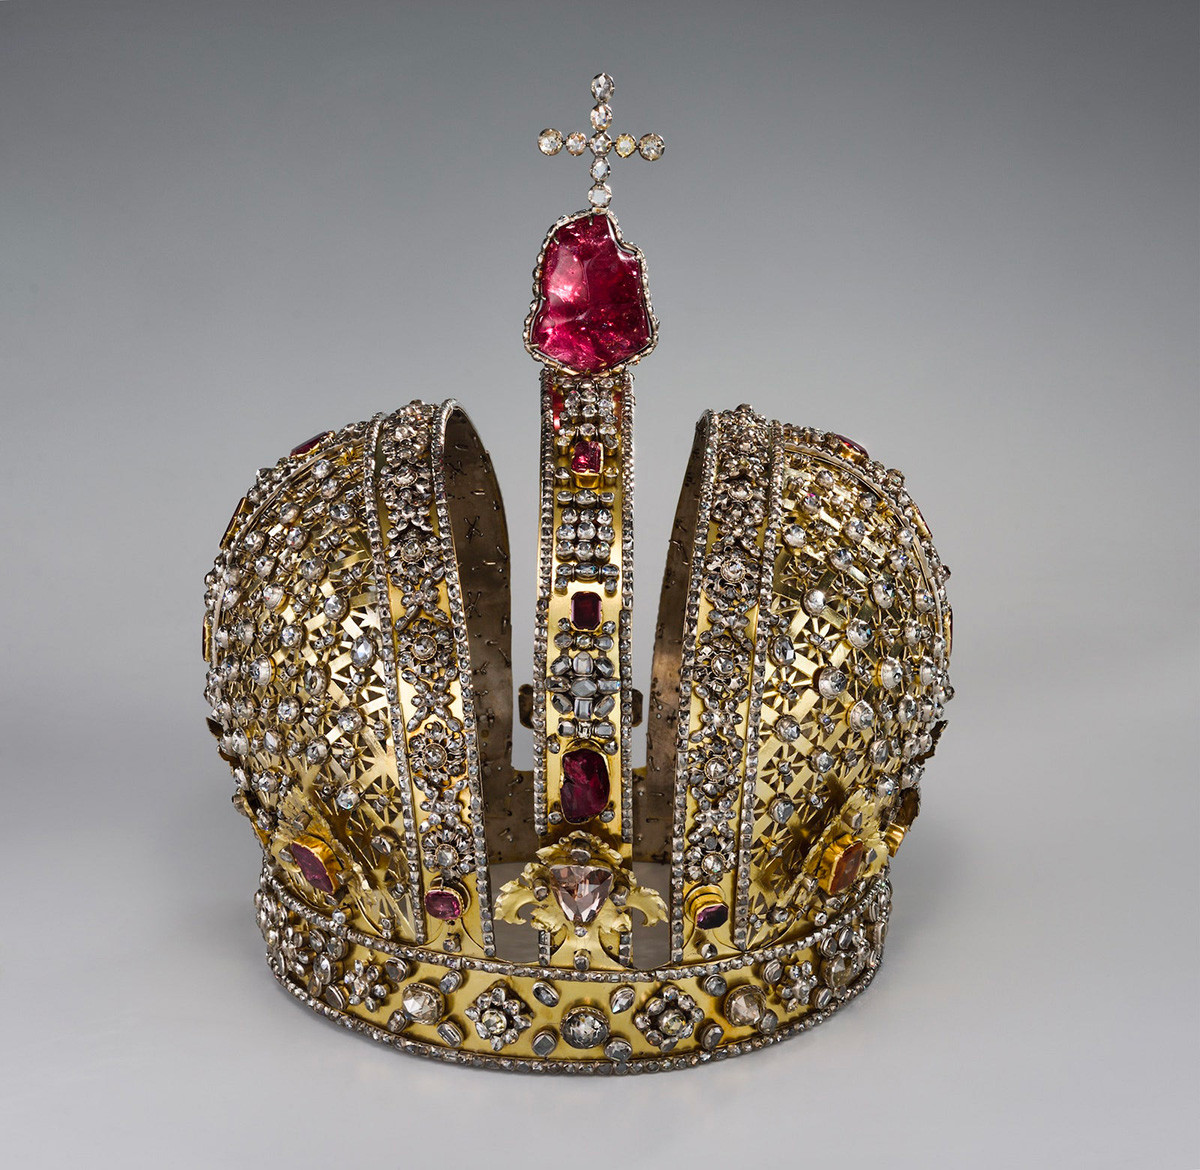 Coroa de Anna Ioánnovna.

